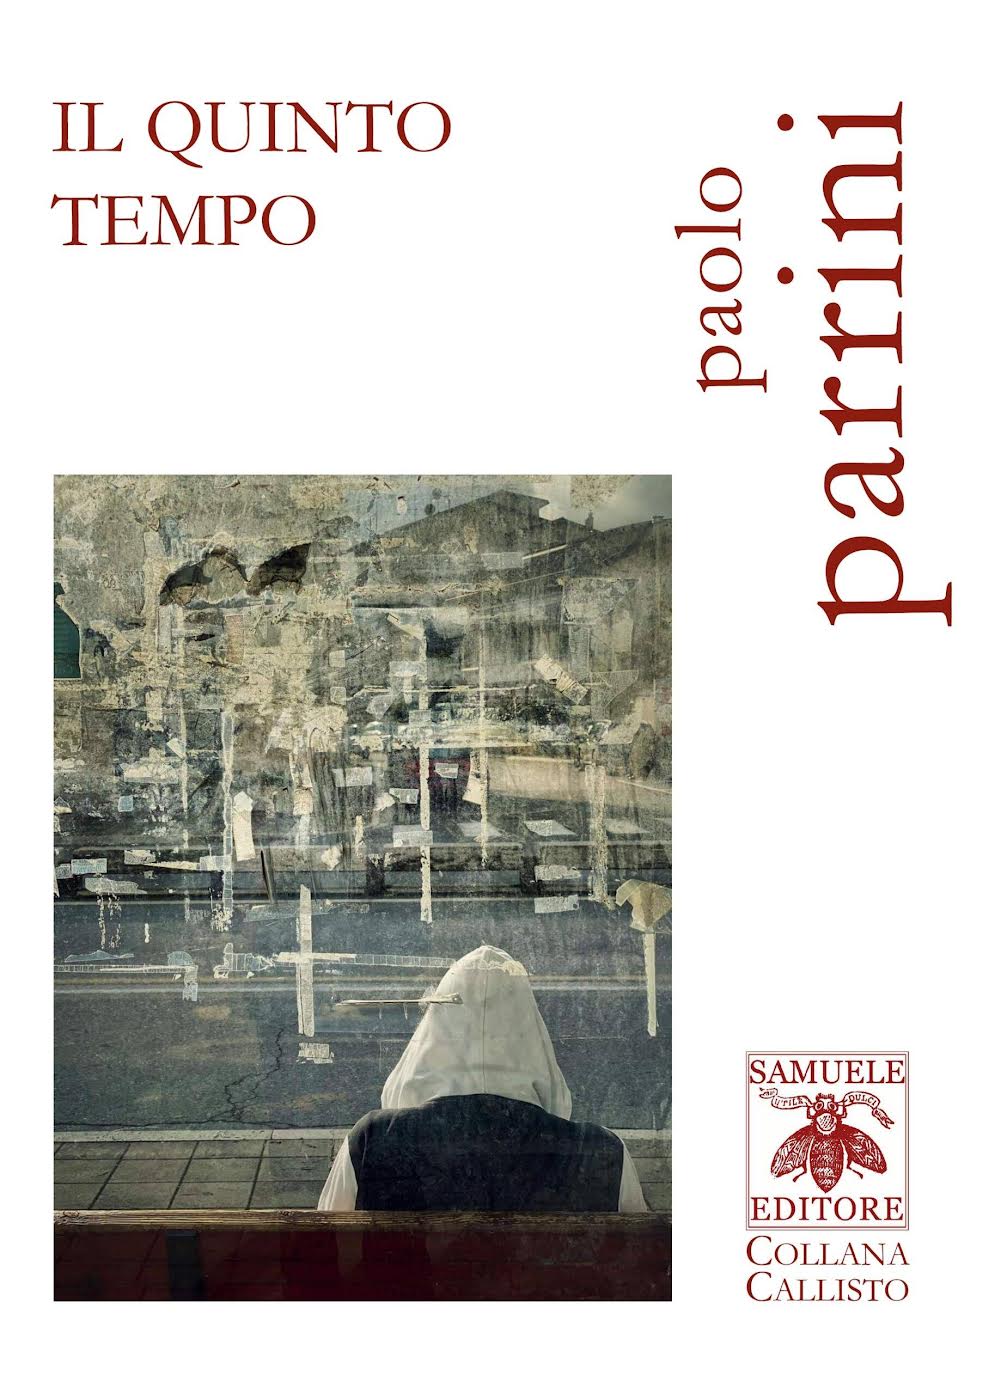 Recensione libro "Il quinto tempo" Paolo Parrini